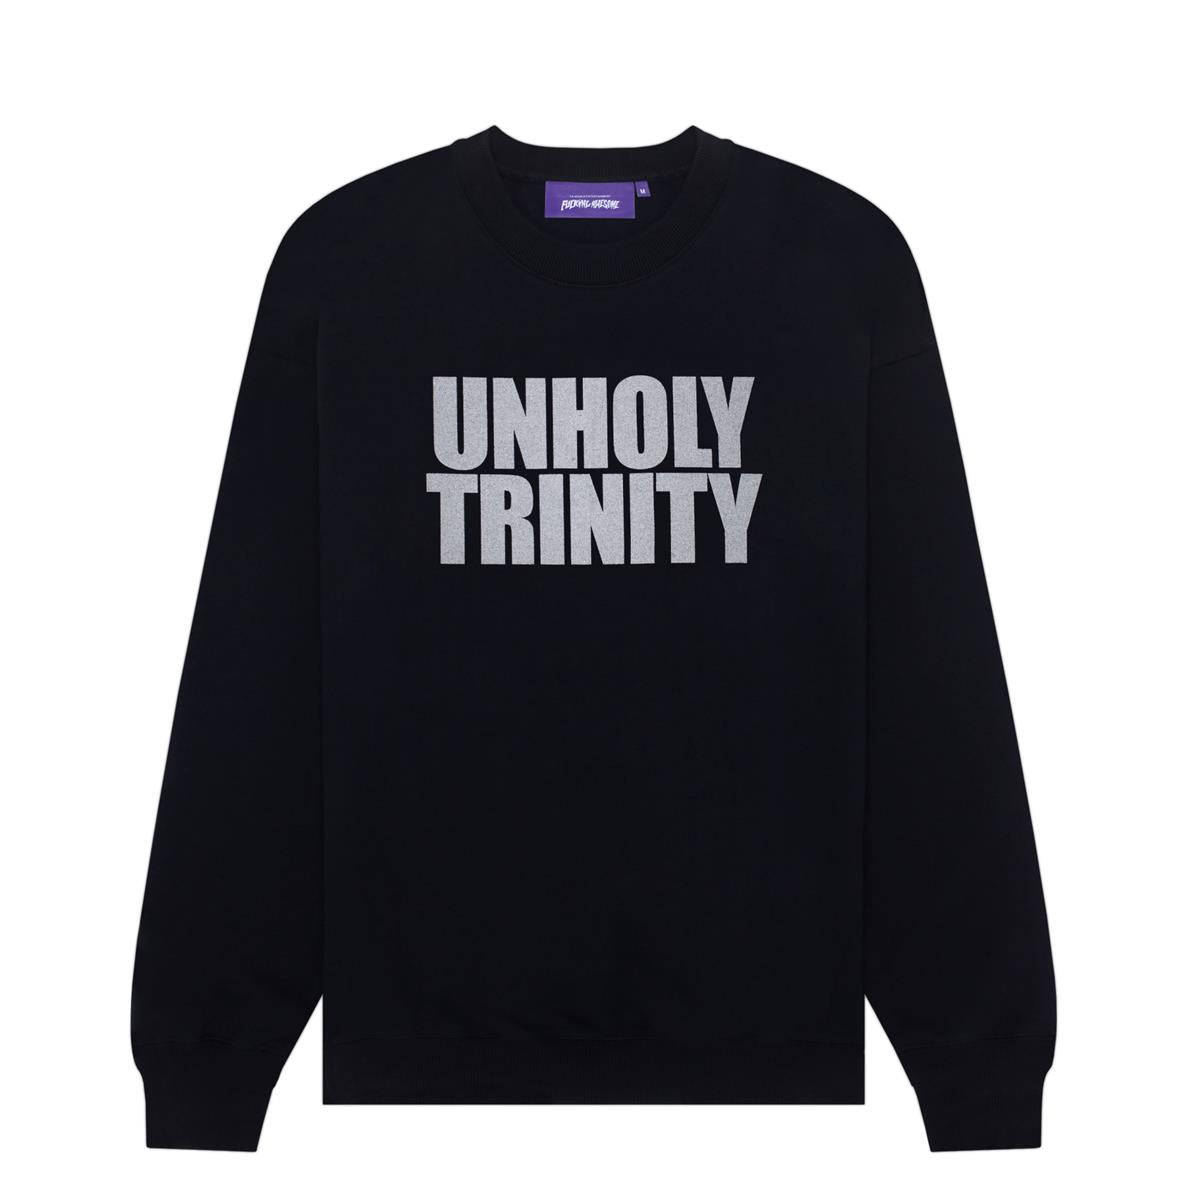 Putain génial - Unholy Trinity Crew - Noir